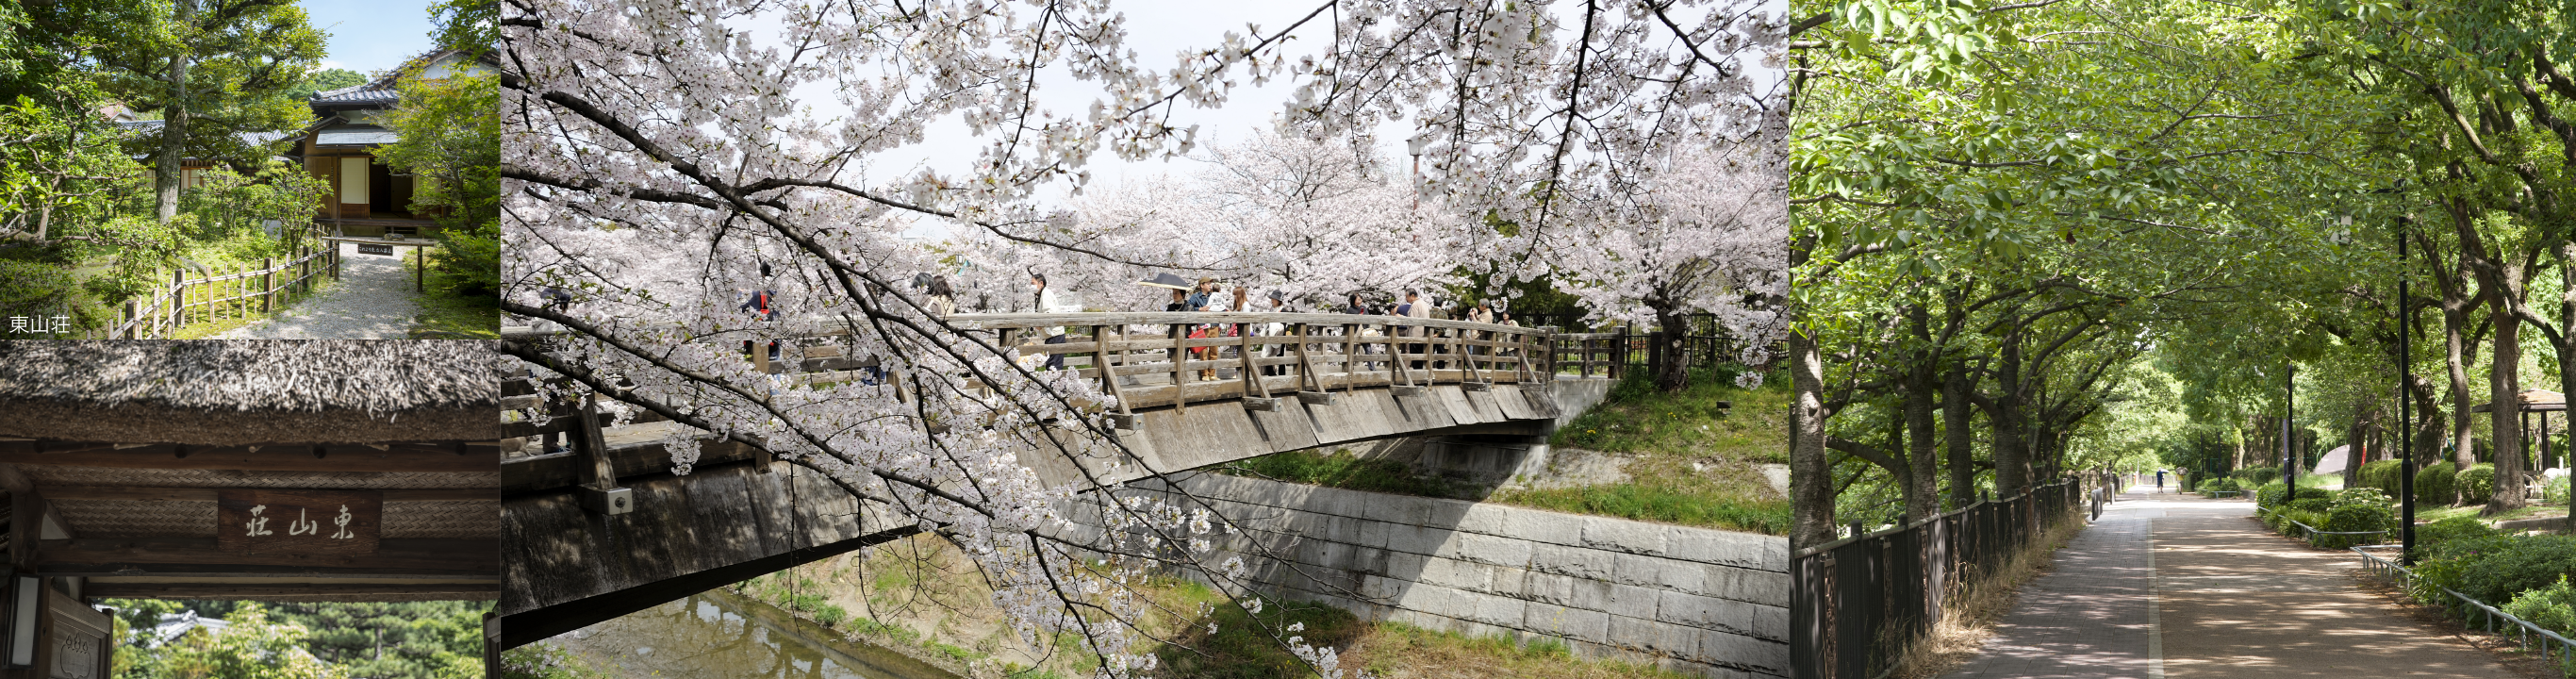 日本さくら名所100選の山崎川をはじめ、四季に寄り添う美しい風景が広がる桜山エリア。瑞穂区ならではの季節を身近に感じる心地よい暮らしがここにあります。